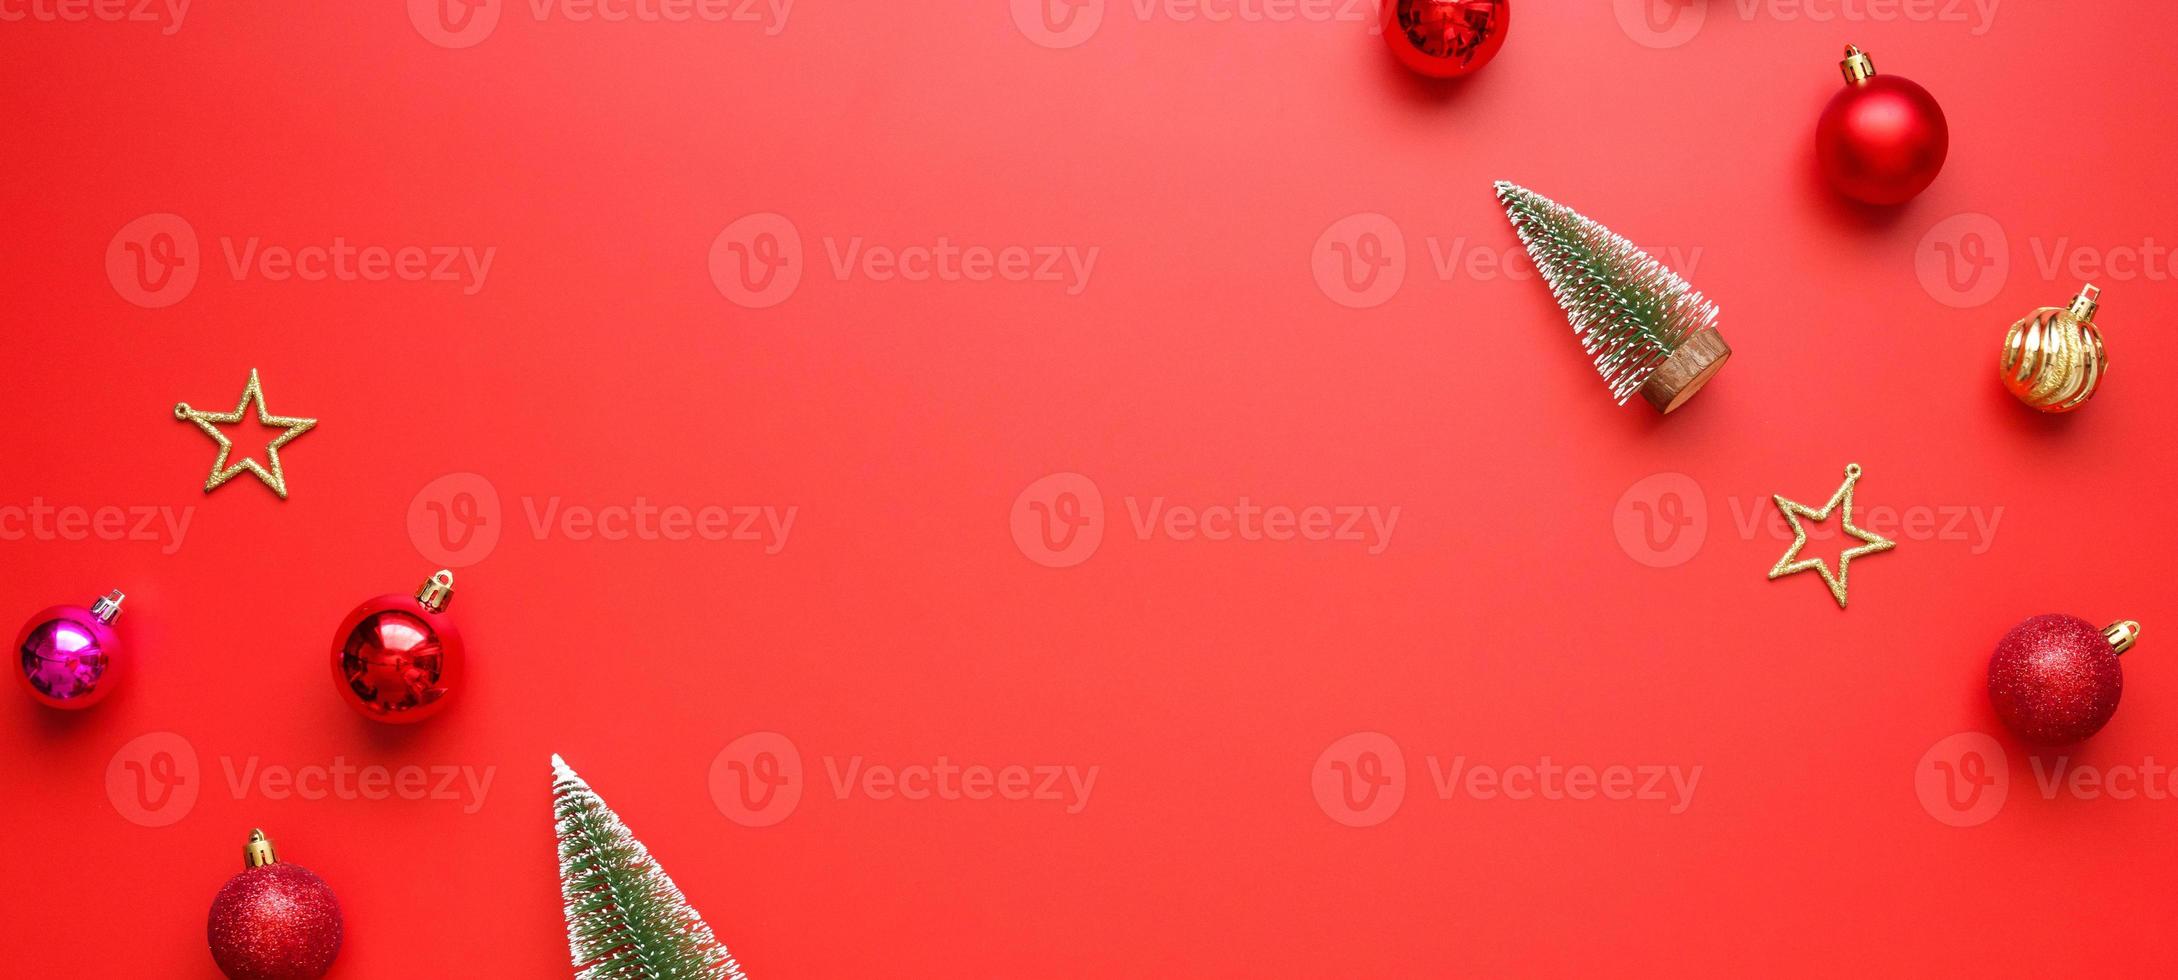 navidad año nuevo vacaciones fondo pino bola chuchería sobre fondo rojo foto